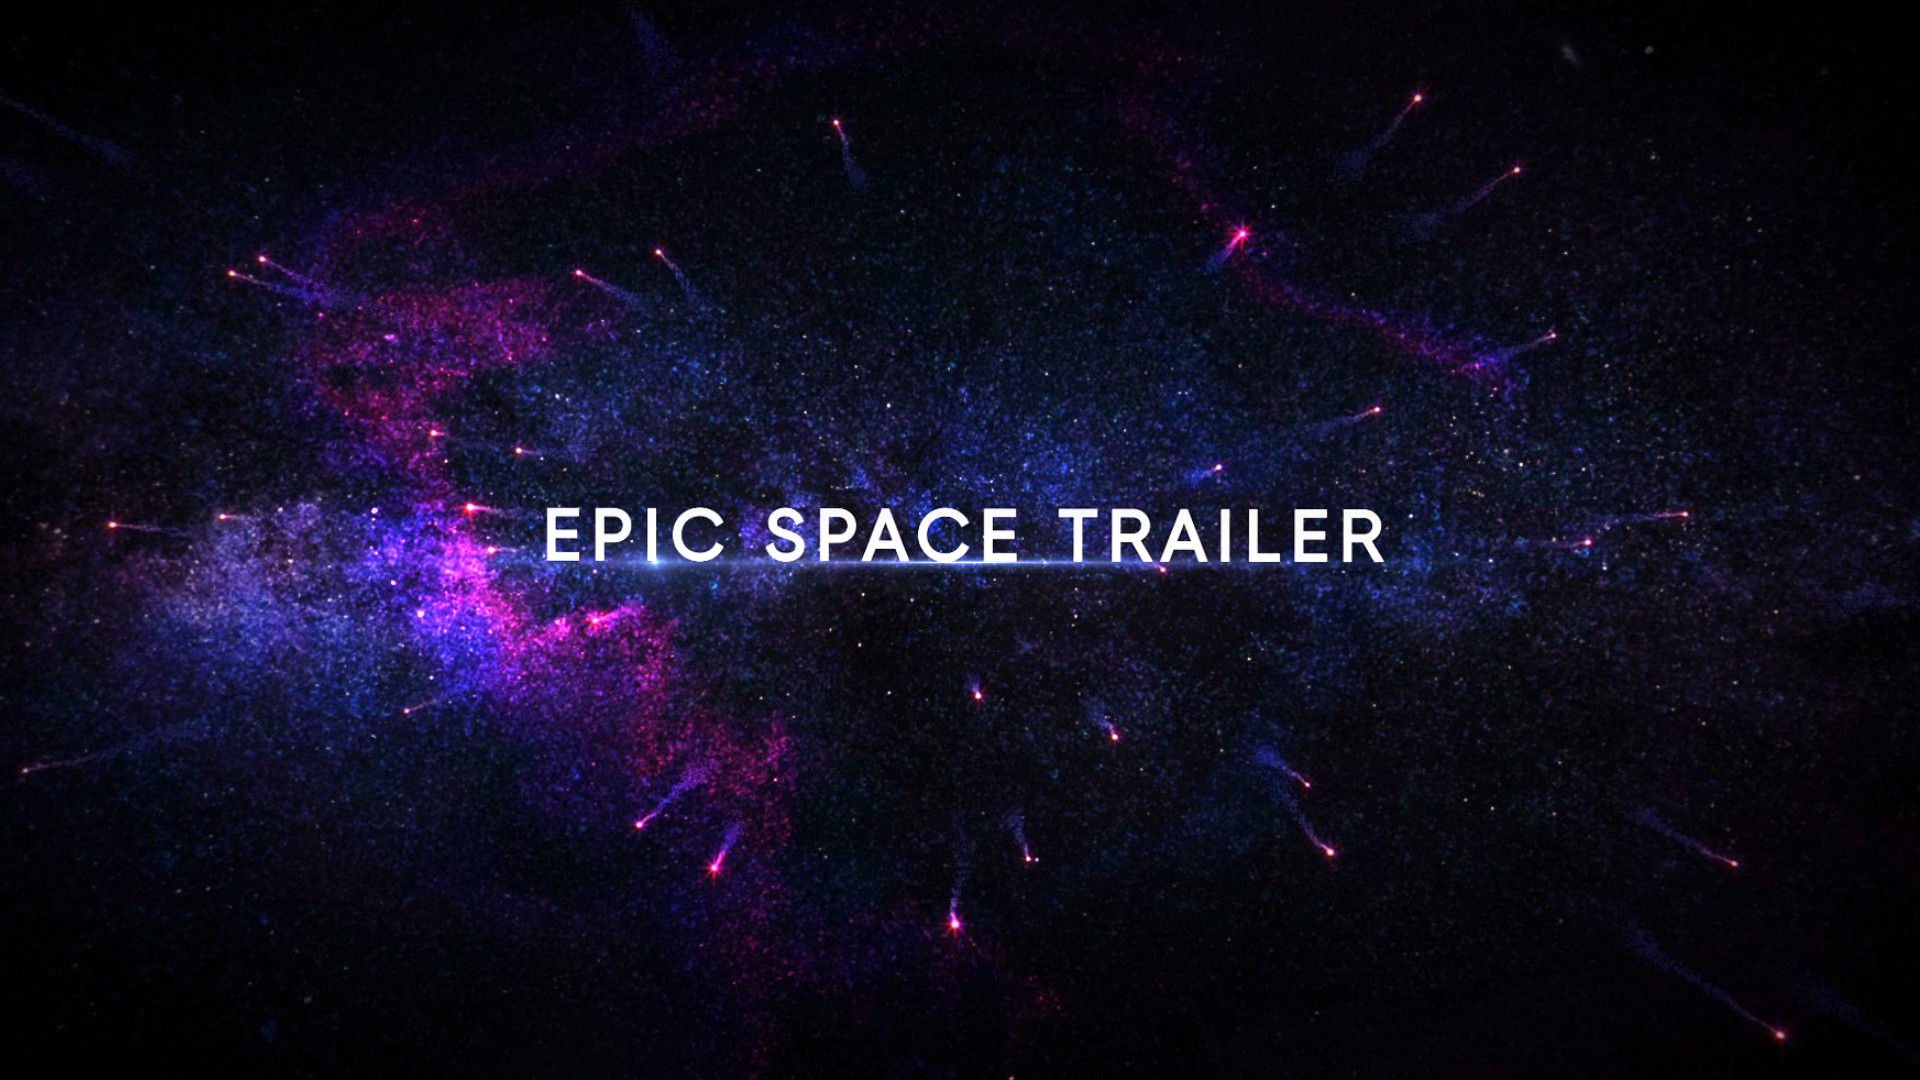 10个引人注目的史诗空间预告片过渡效果16图库精选AE模板 Epic Space Trailer